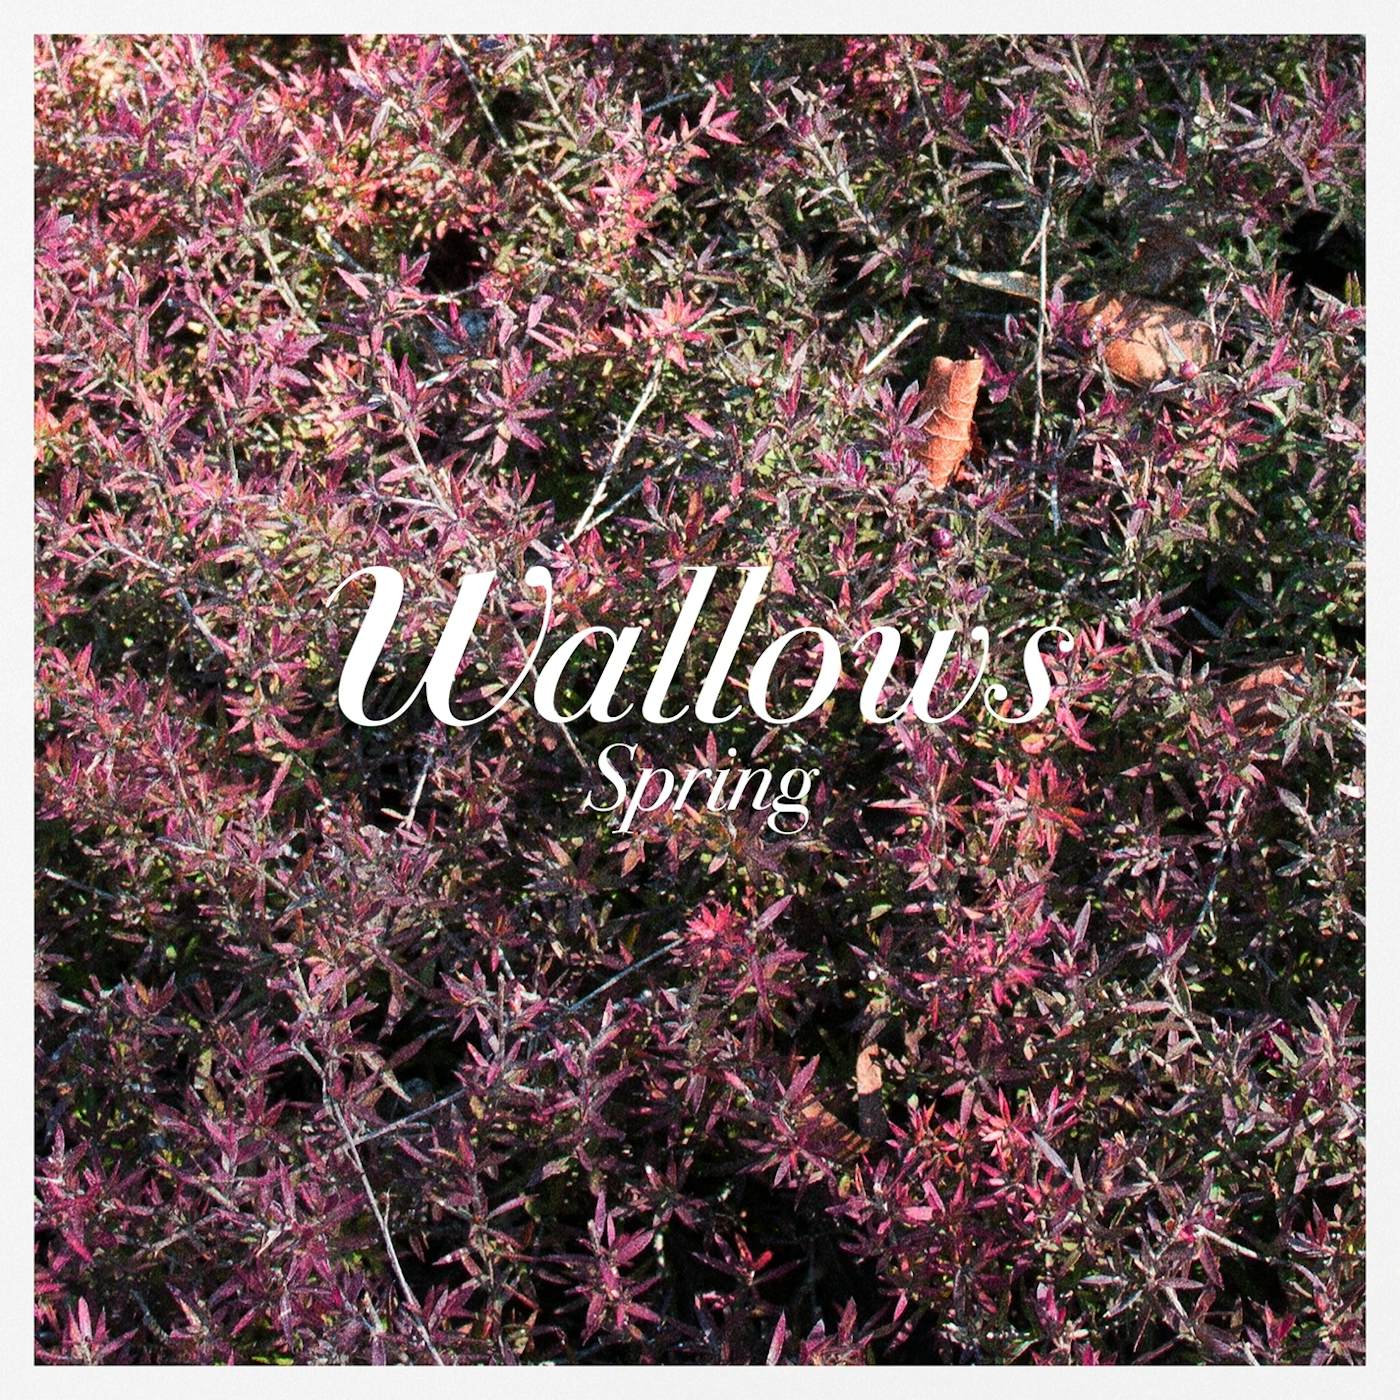 Wallows ‘spring’ EP (Digital Album)